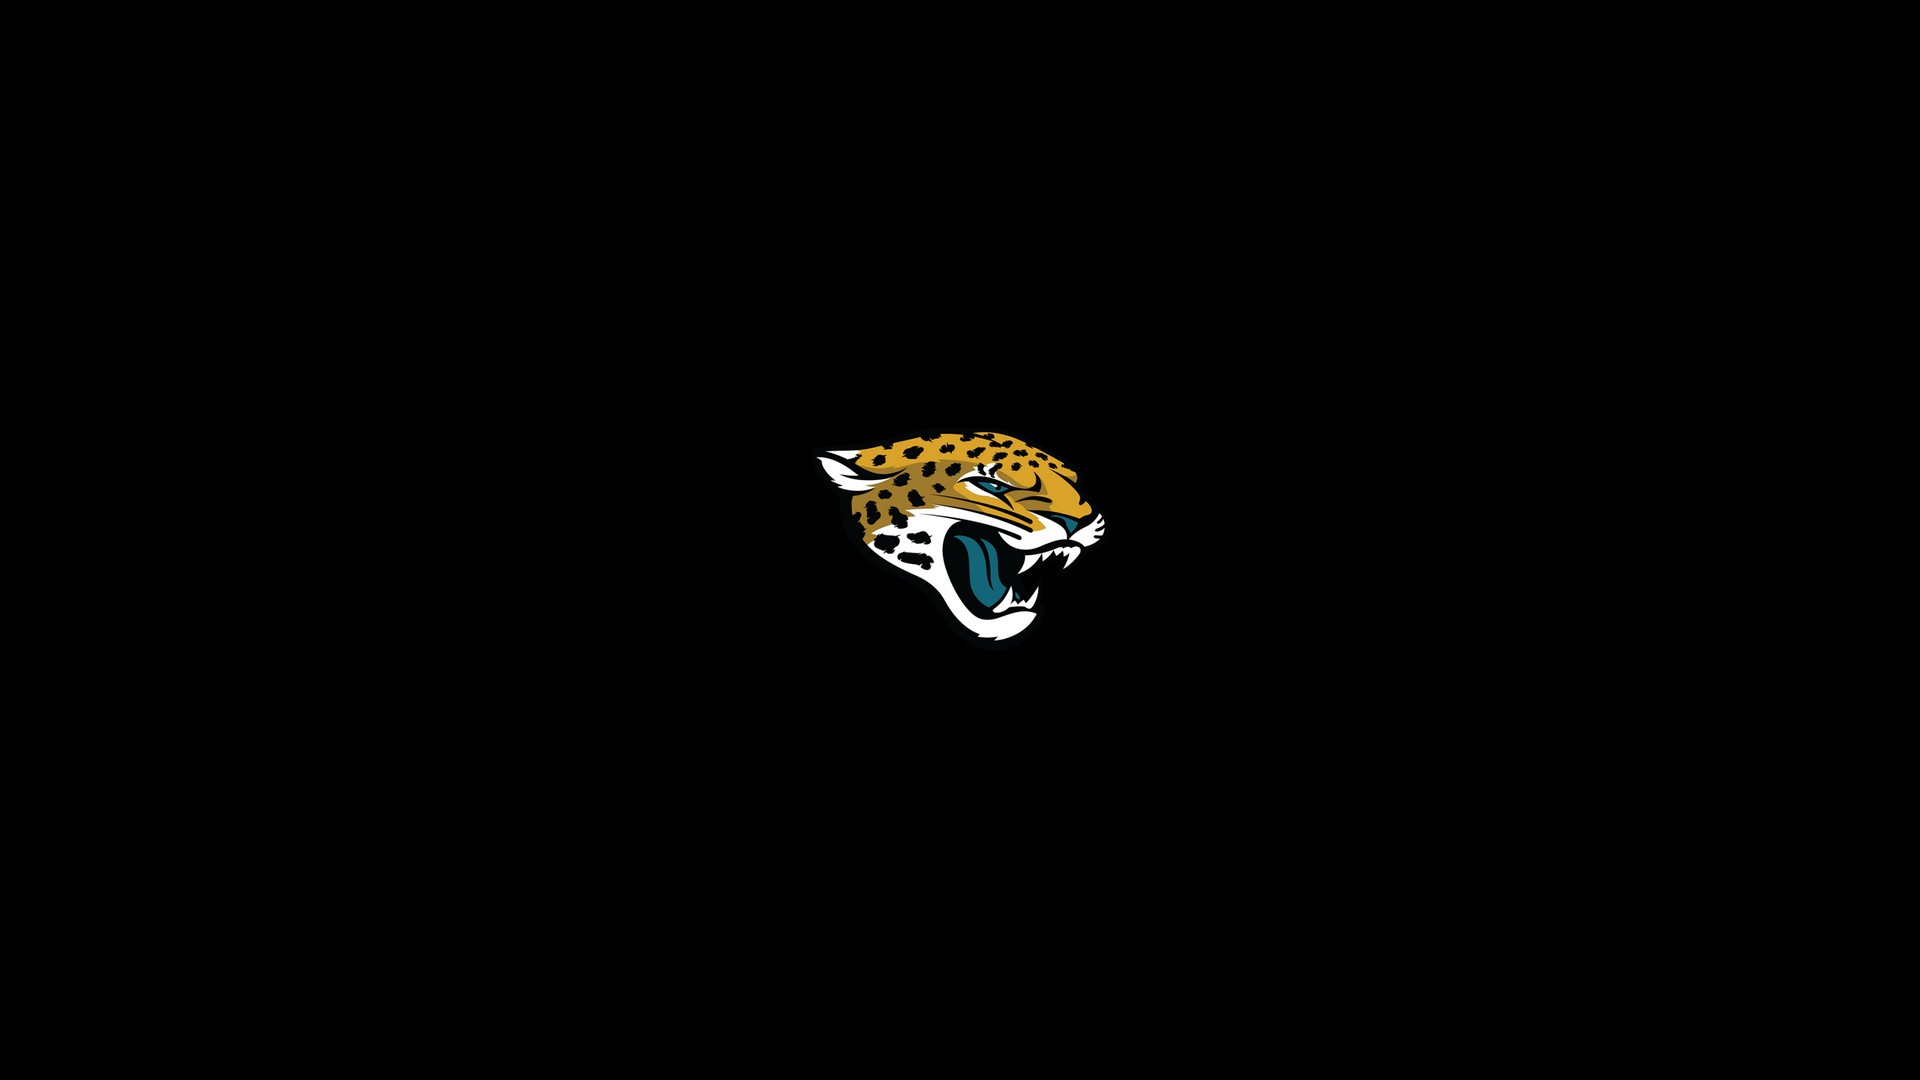 Jags florida football jacksonville jaguars nfl scroggins HD phone  wallpaper  Peakpx